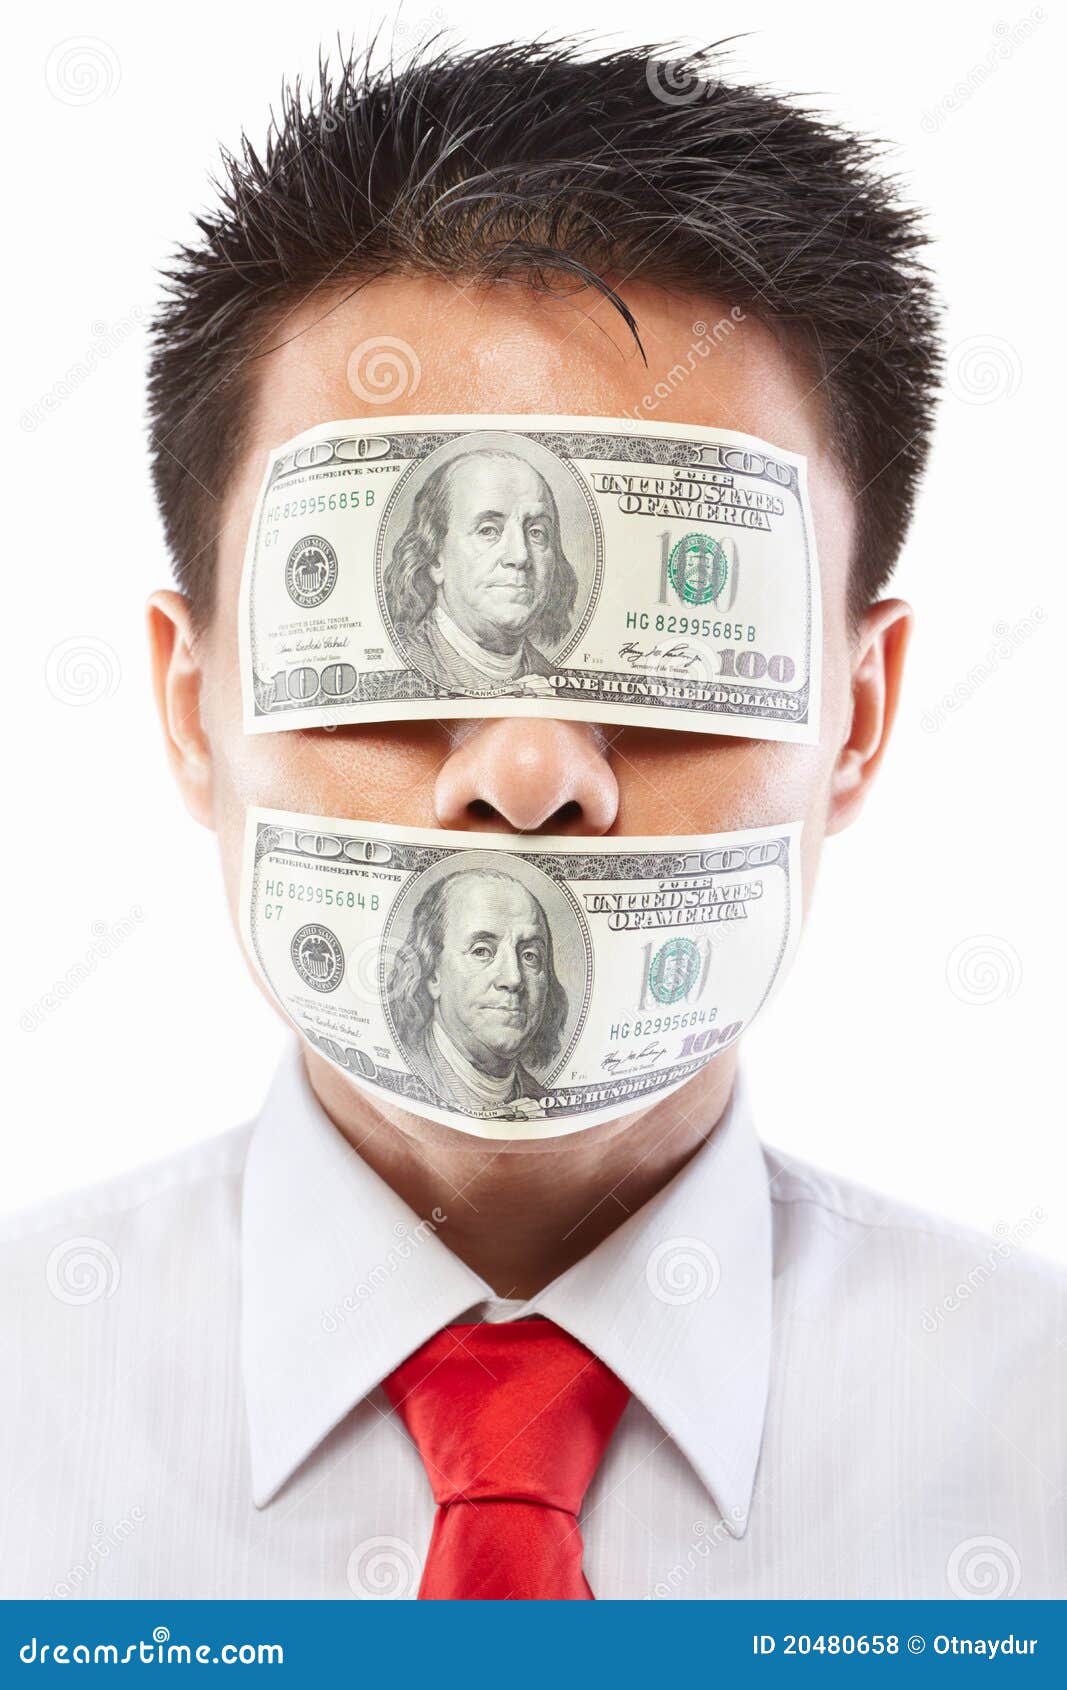 Глазки деньги. Человек с долларами в глазах. Деньги в глазах. Глаза закрыты деньгами. Доллары вместо глаз.